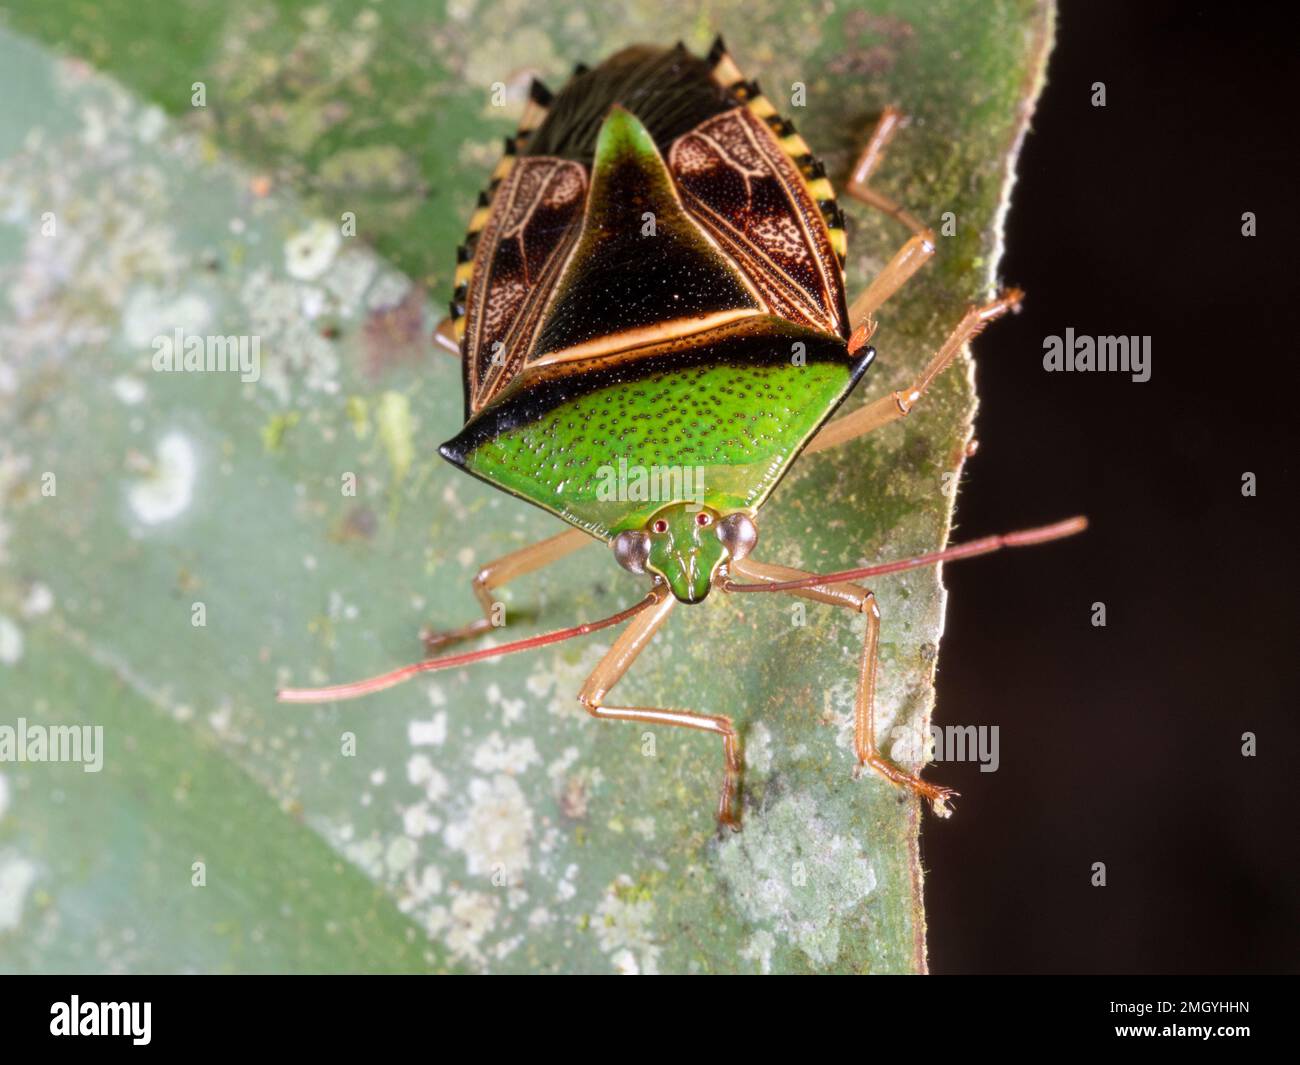 Apestoso Bug (Familia Pentatomidae) en la parte inferior de una hoja de sotobosque, provincia de Orellana, Ecuador Foto de stock